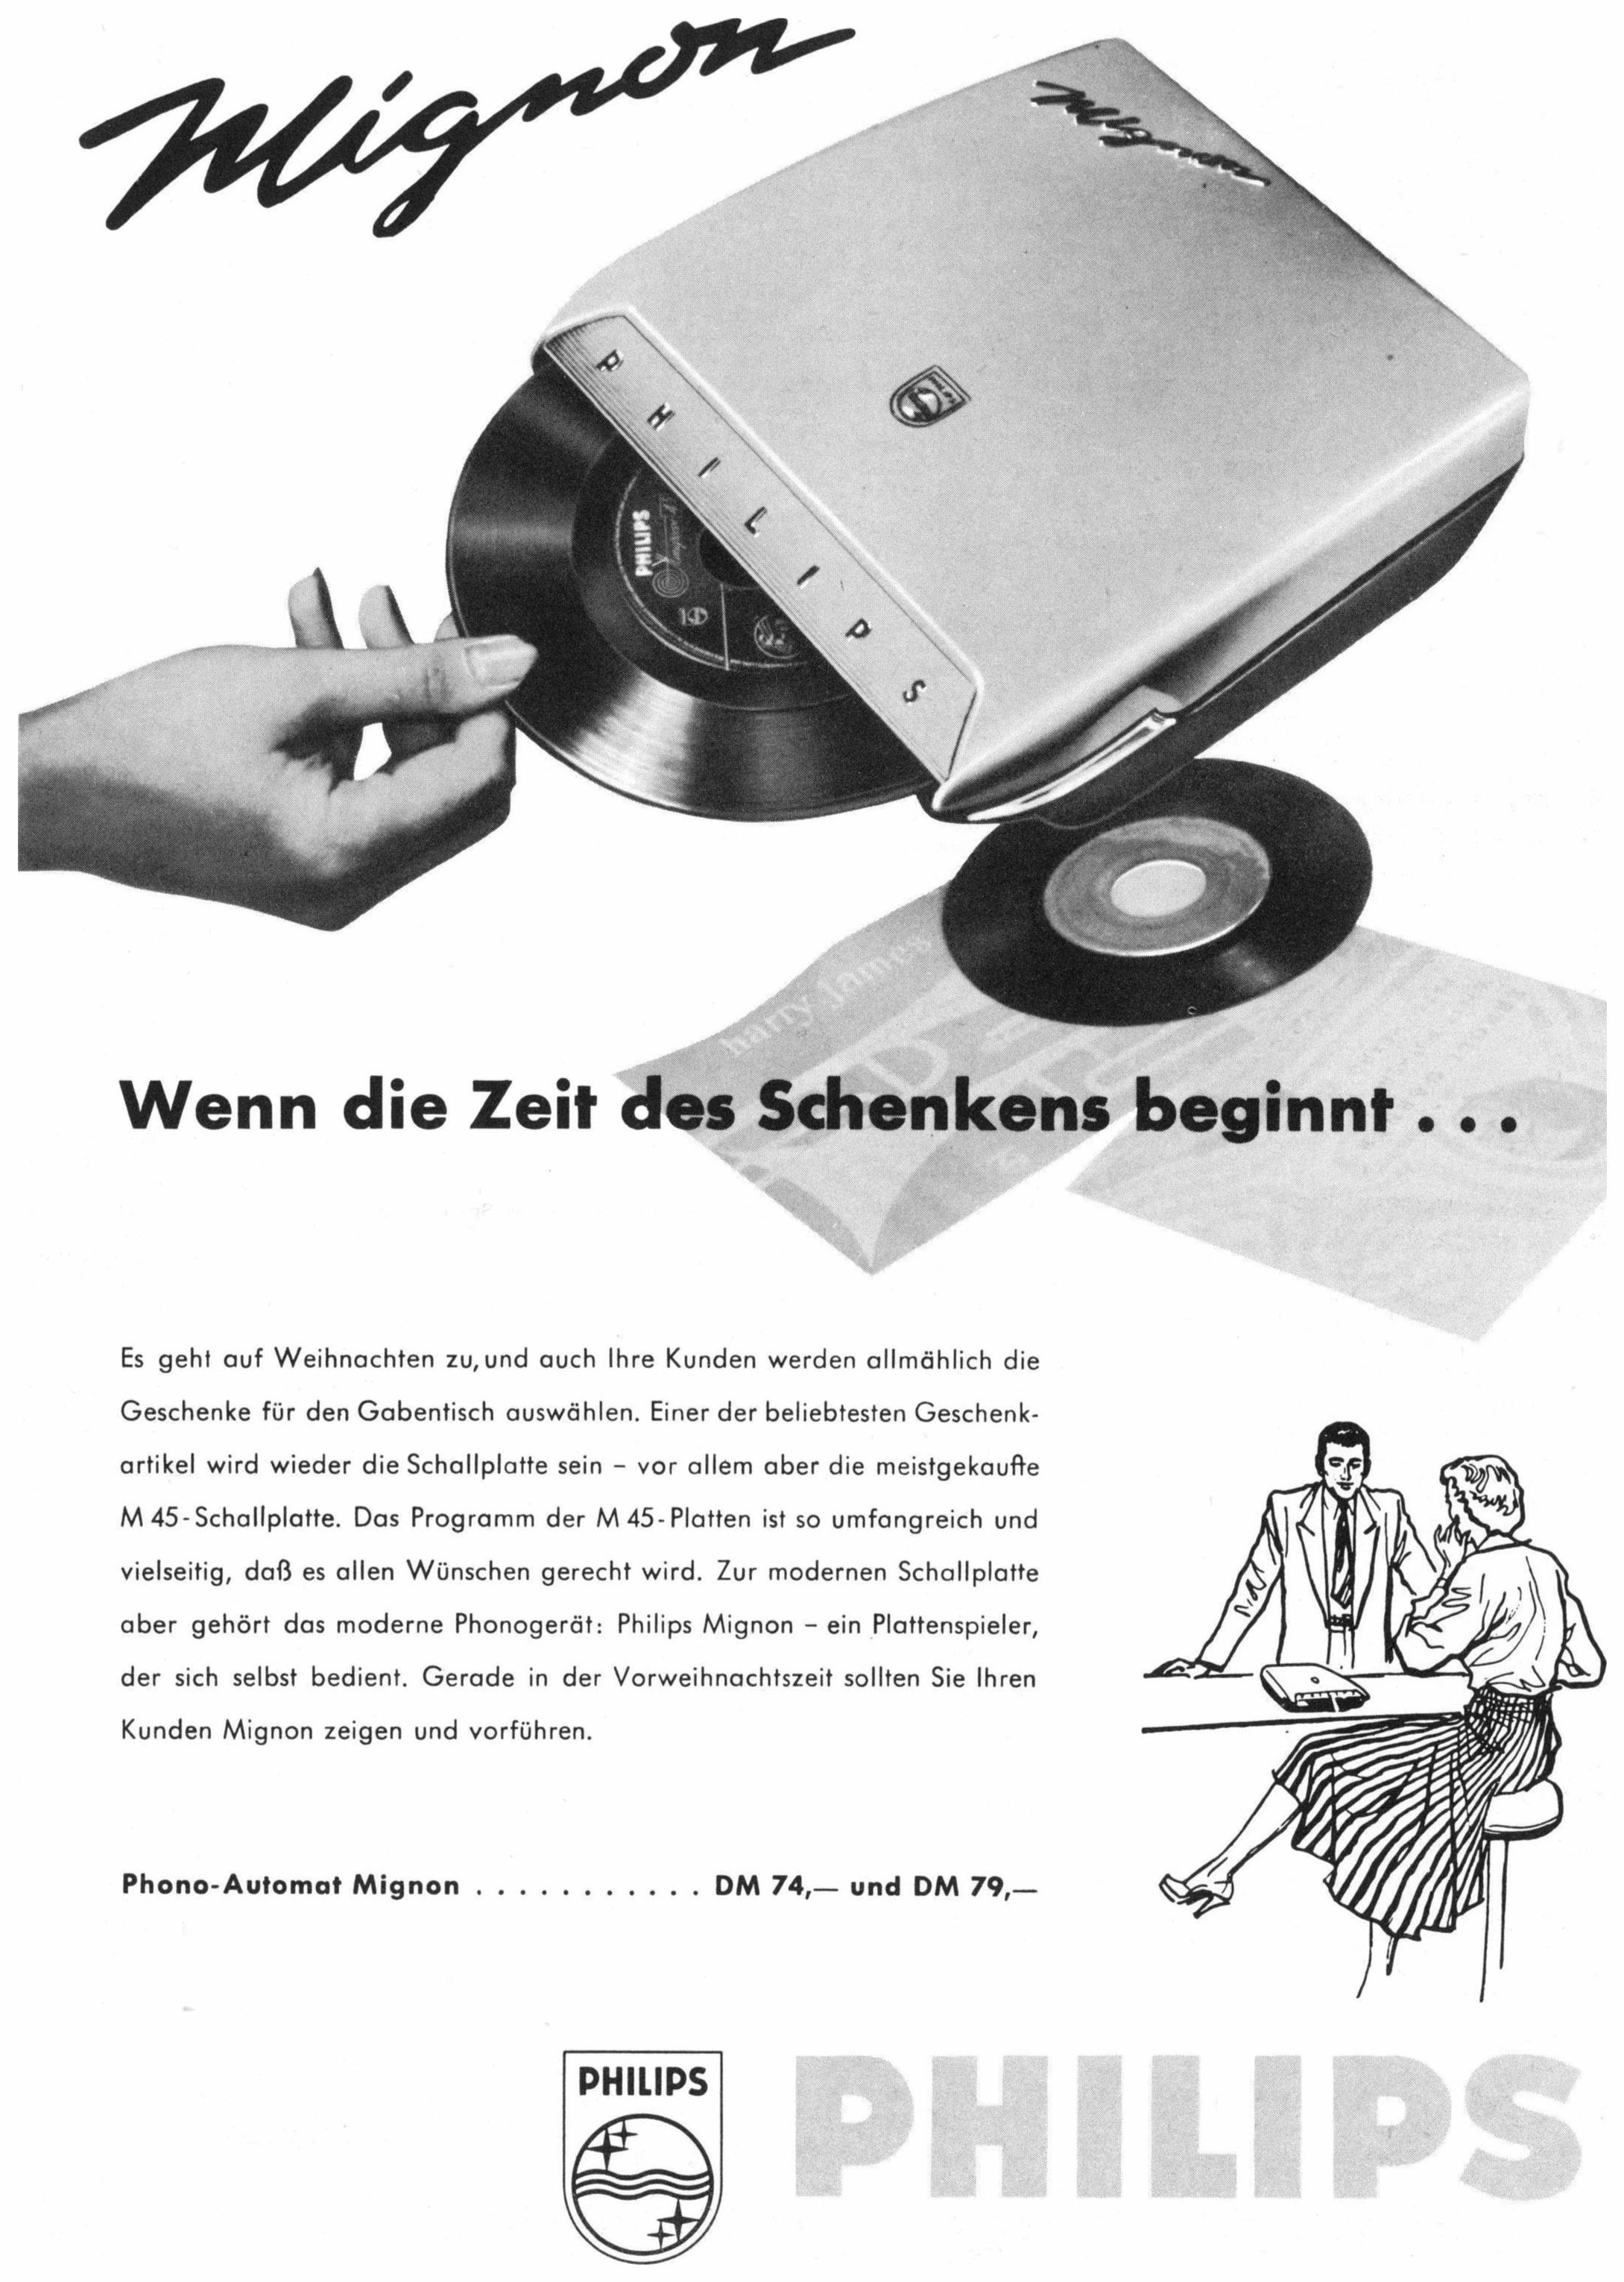 Philips 1957 6.jpg